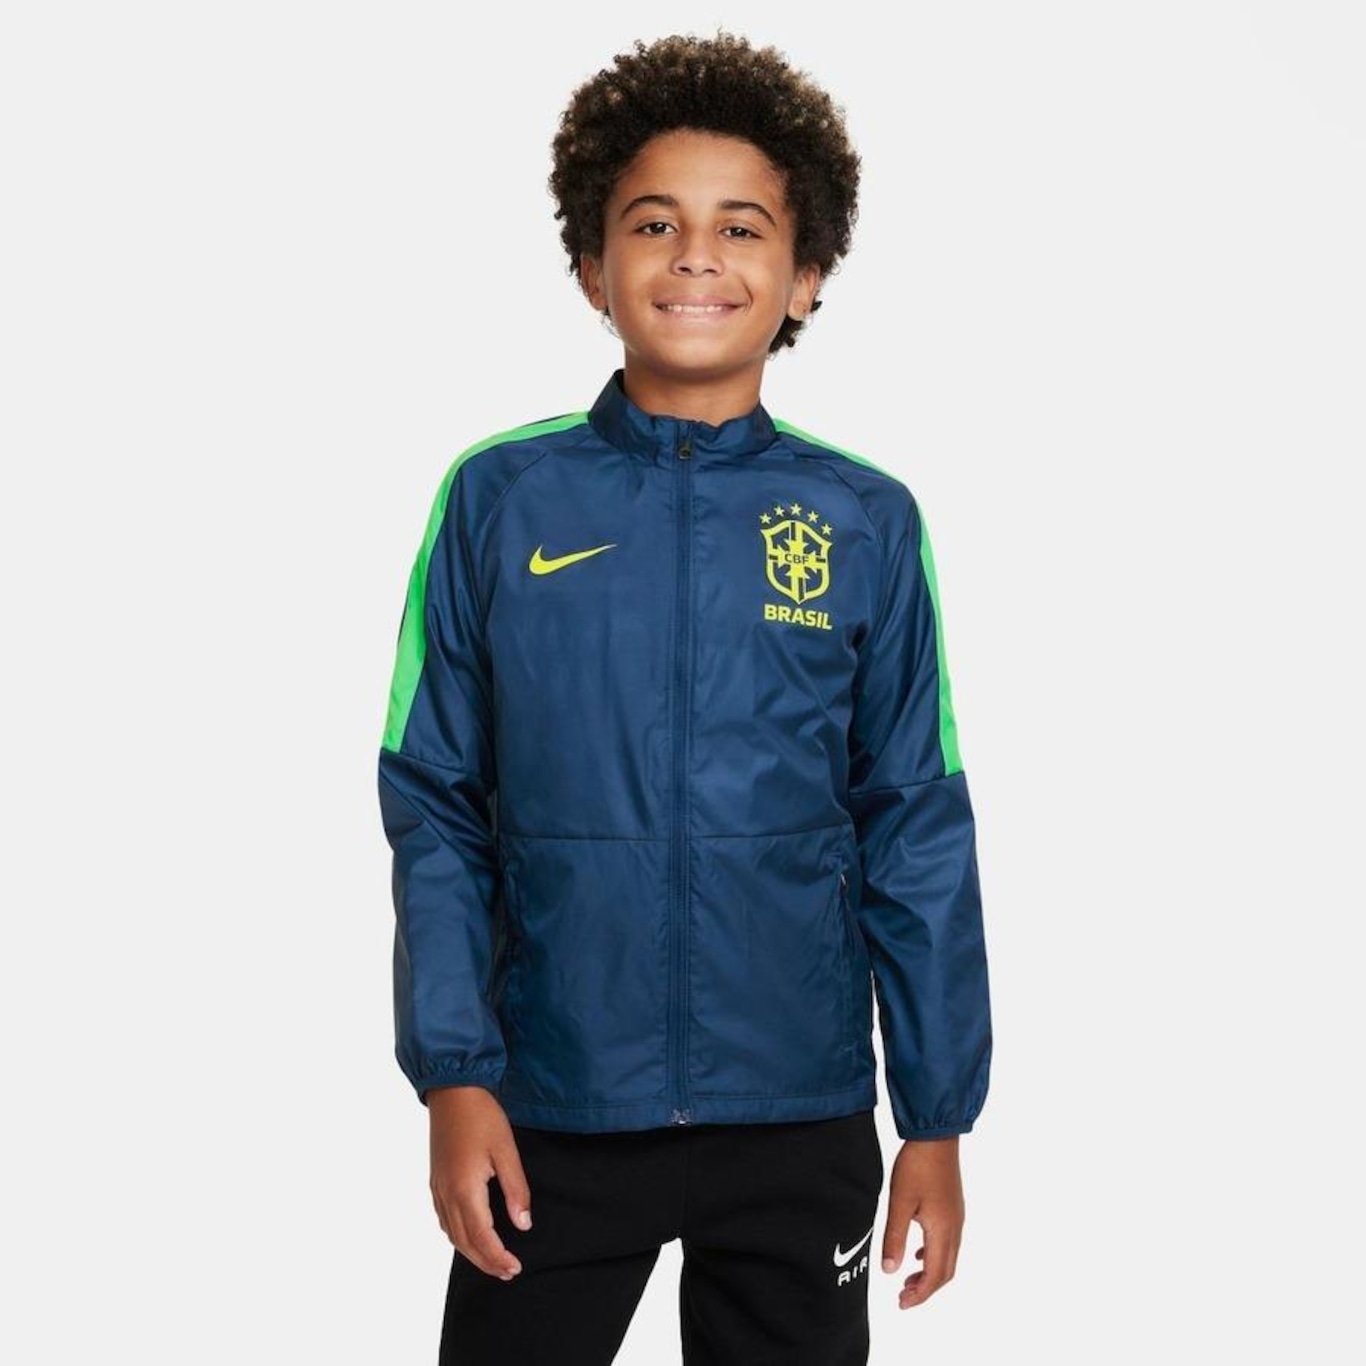 Jaqueta do Brasil Nike Academy - Infantil em Promoção